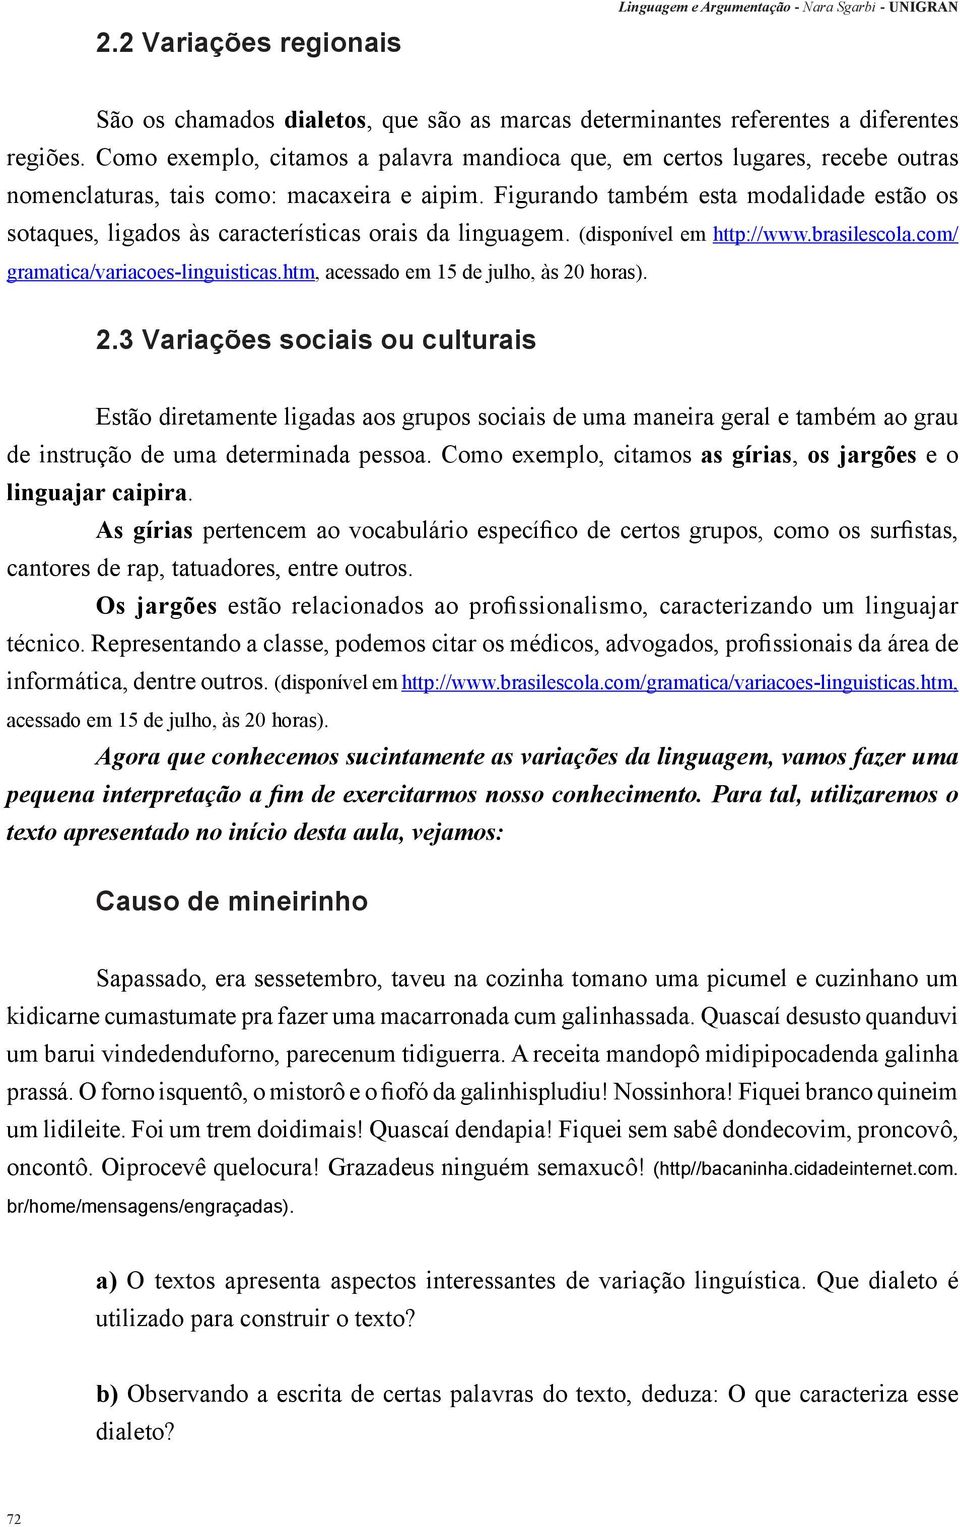 Figurando também esta modalidade estão os sotaques, ligados às características orais da linguagem. (disponível em http://www.brasilescola.com/ gramatica/variacoes-linguisticas.